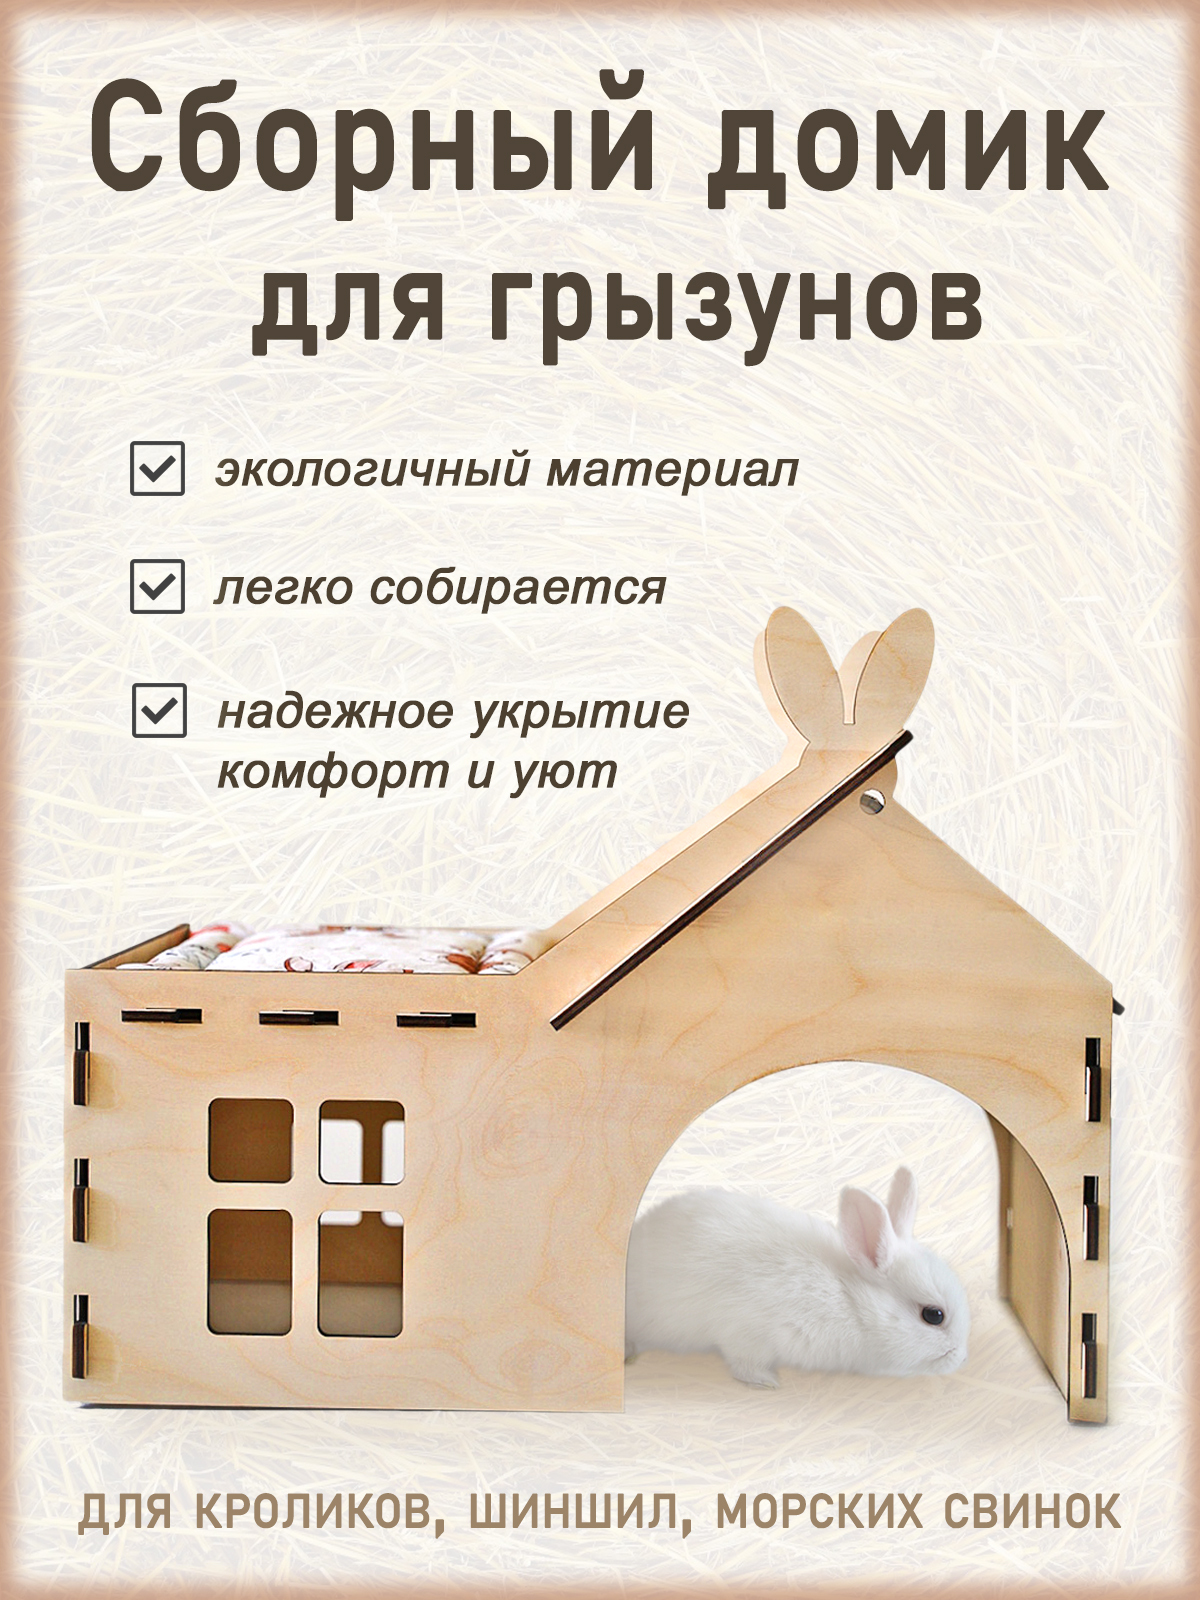 Уличный домик для кроликов 